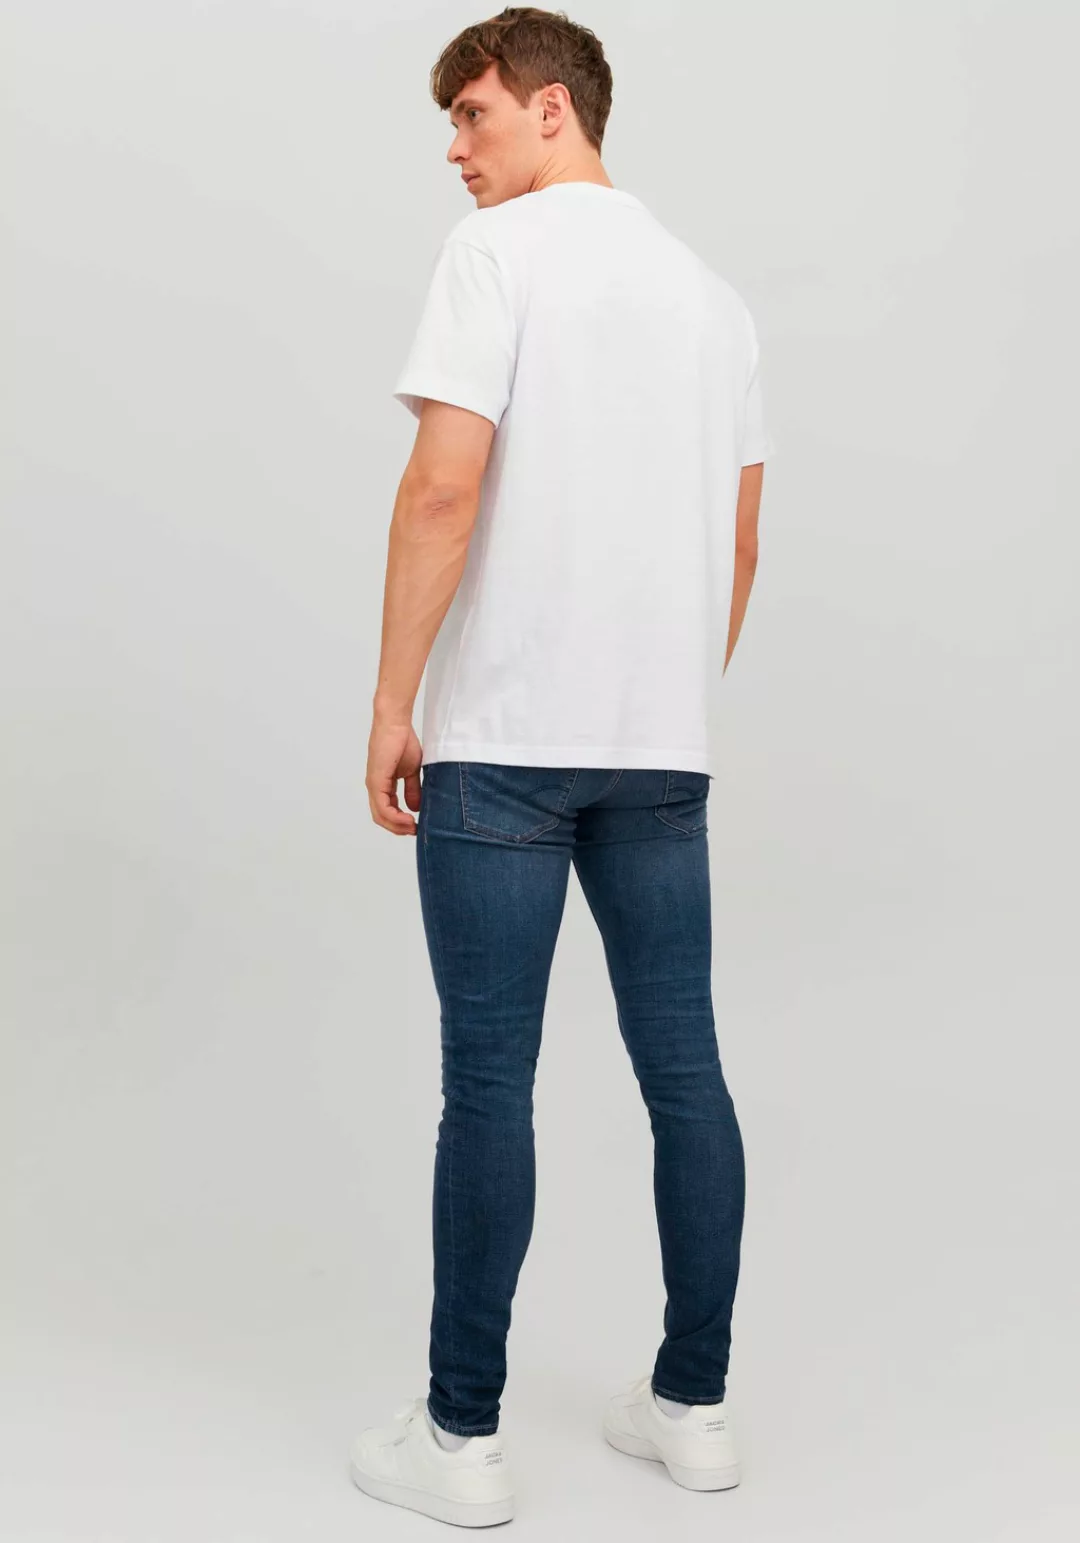 Jack & Jones Skinny-fit-Jeans JJILIAM JJORIGINAL JOS 047 50SPS günstig online kaufen